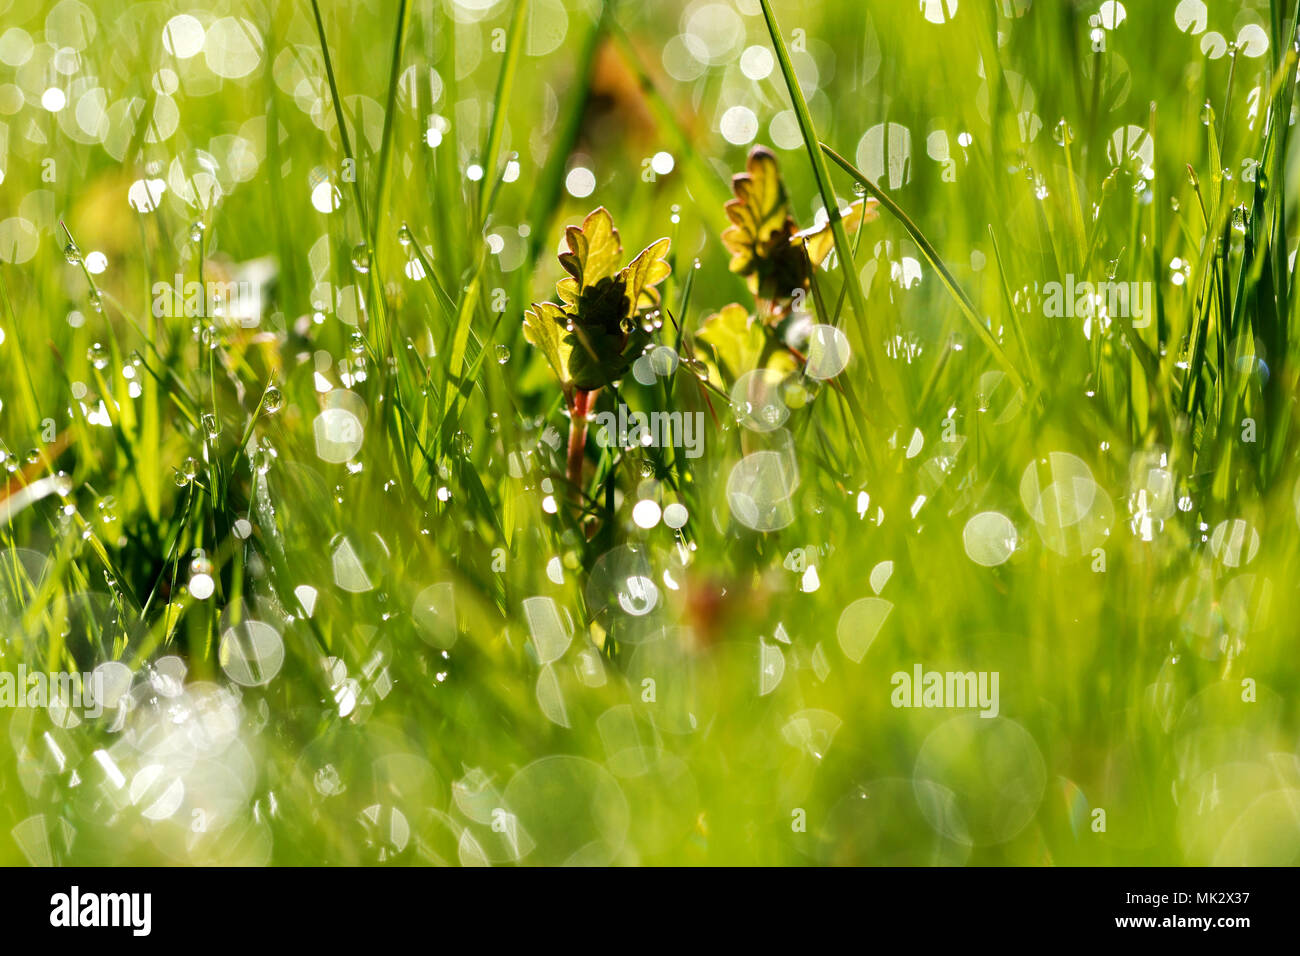 Gocce d'acqua sulla mattina di erba verde Foto Stock